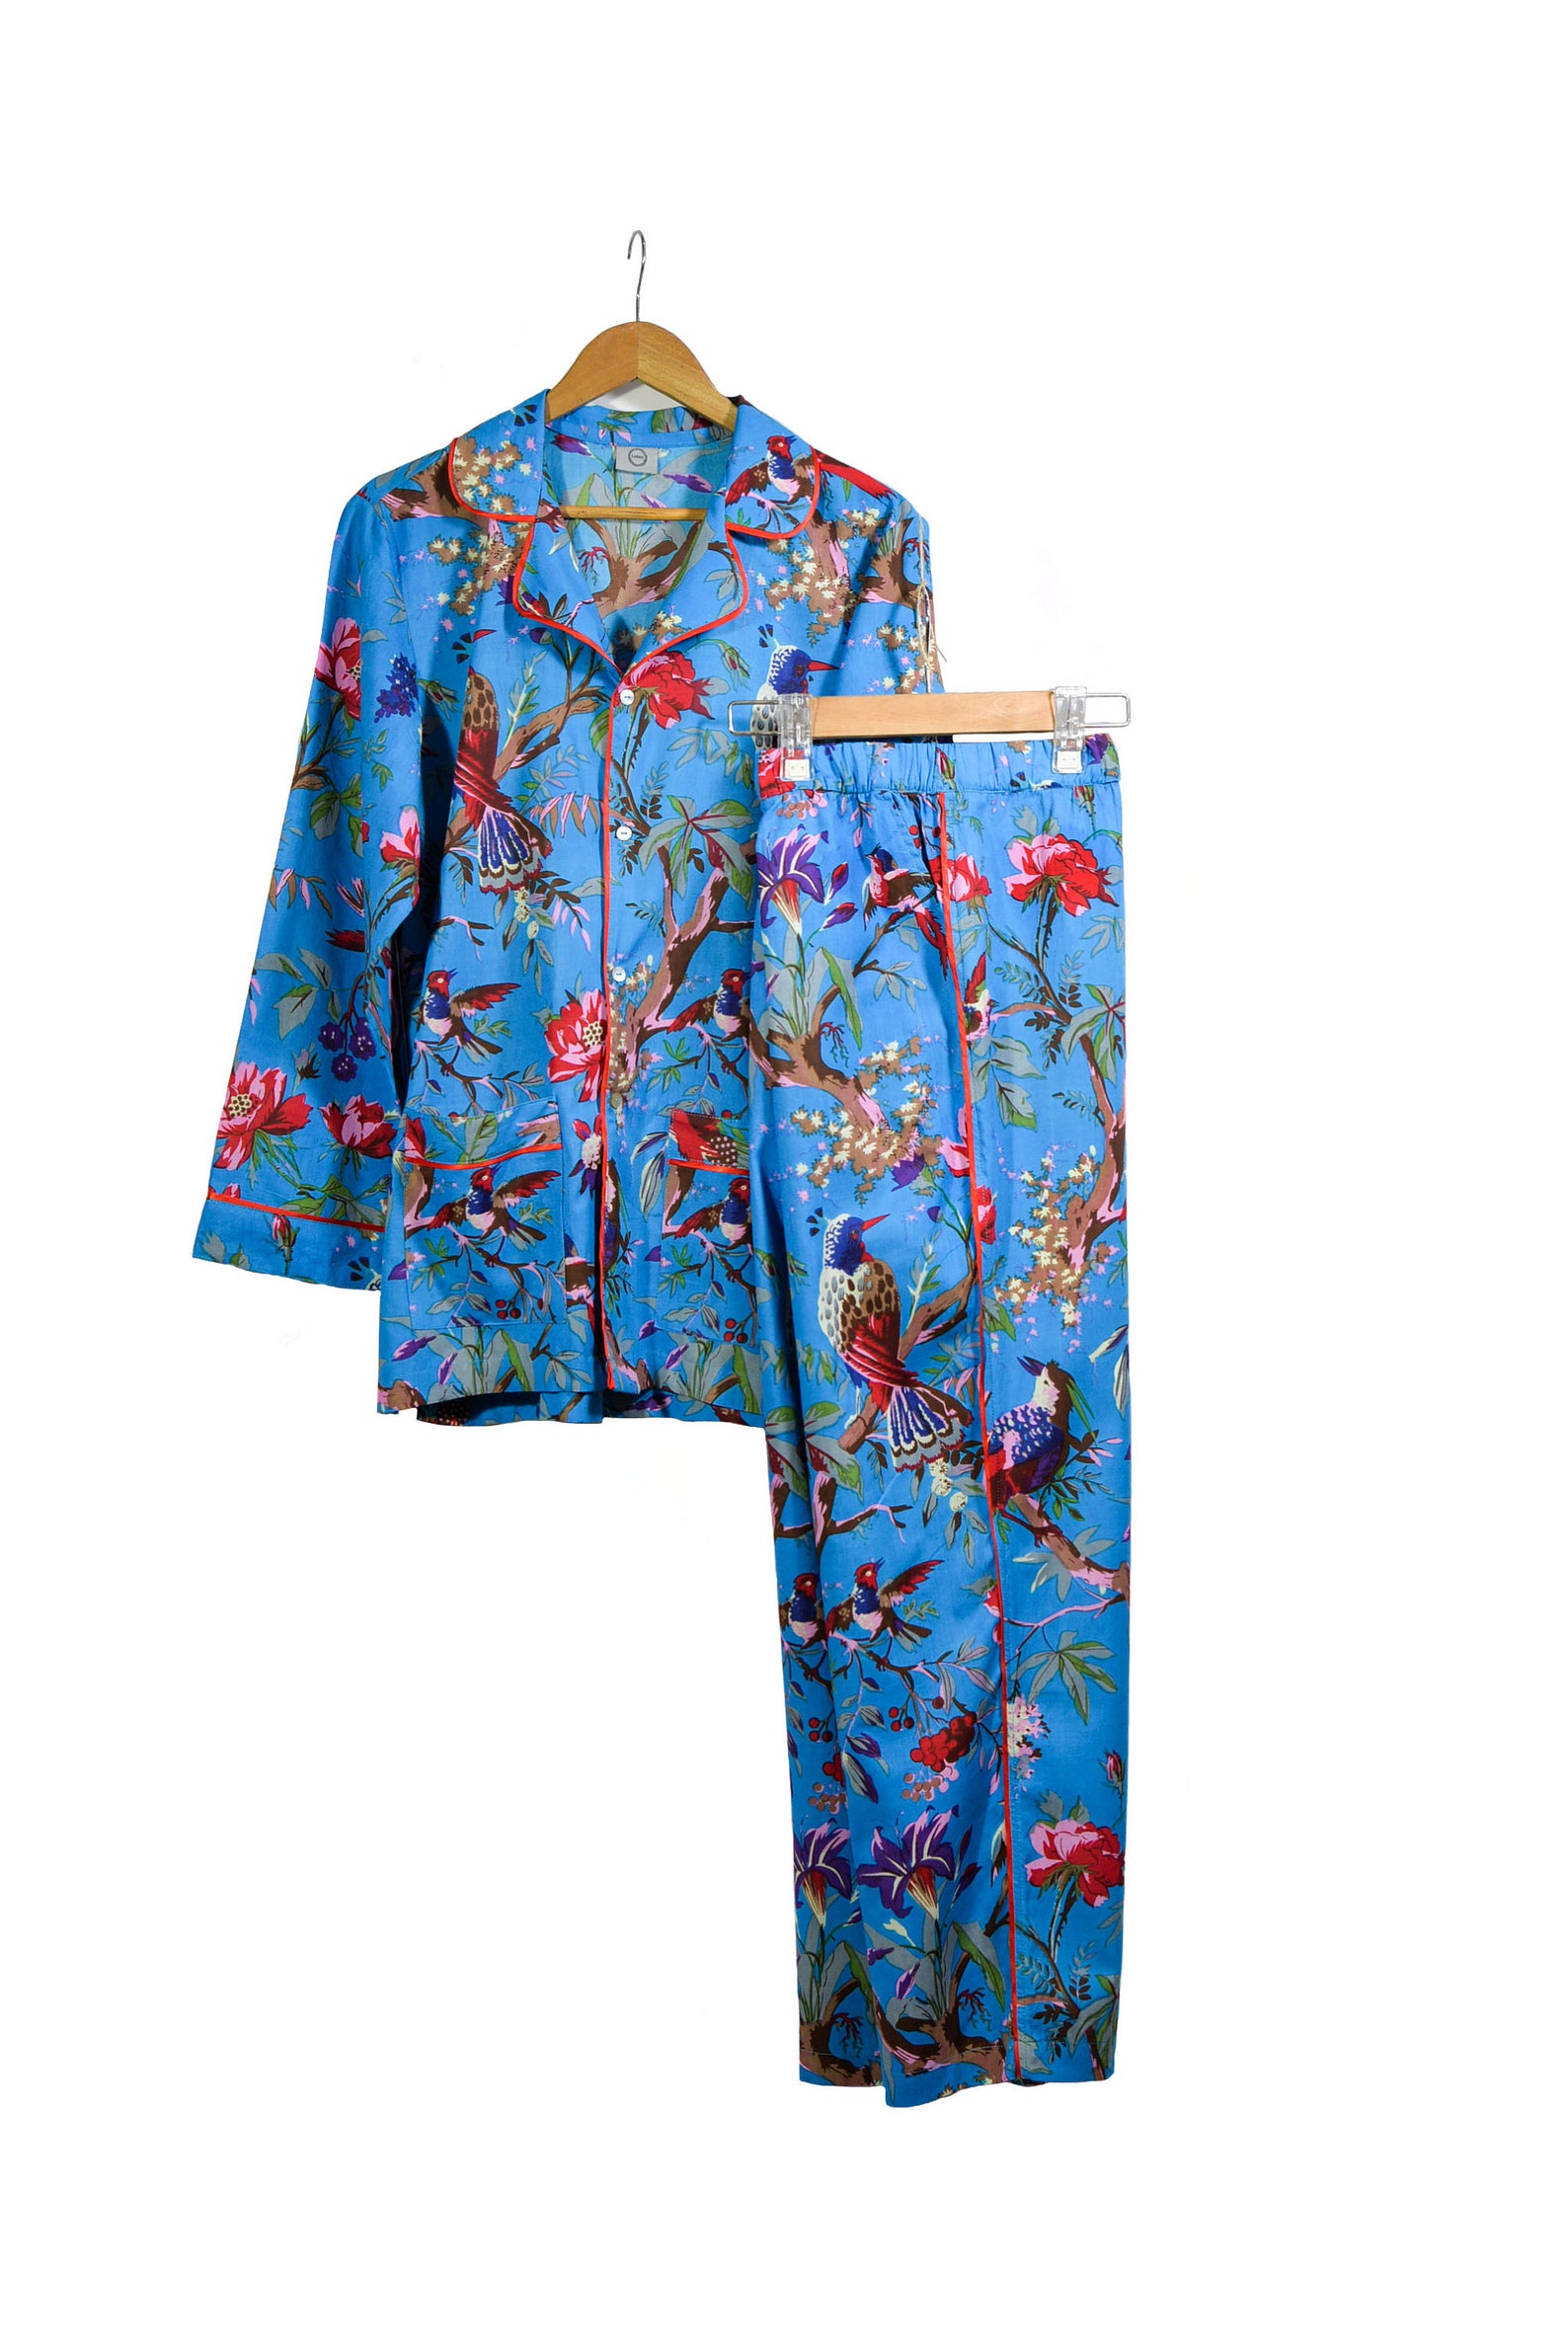 Christmas pyjamas Xmas pajamas pjs bird of paradise | Etsy